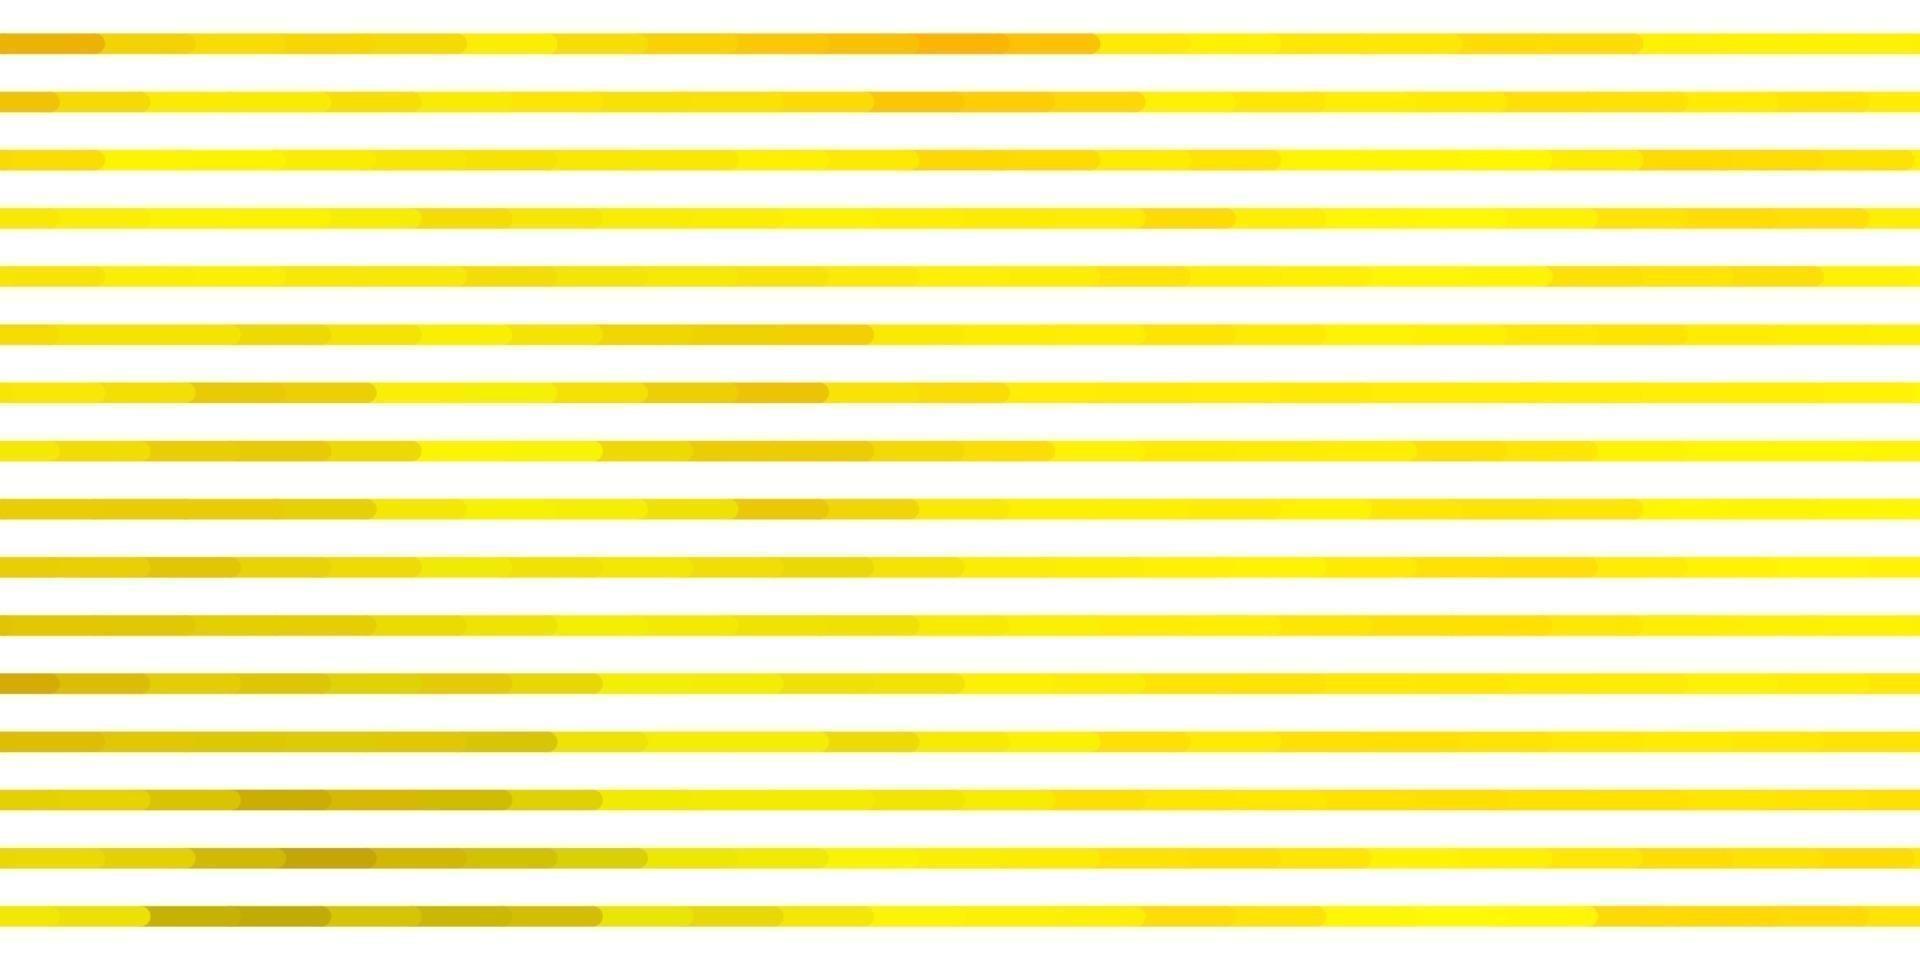 sfondo vettoriale verde chiaro, giallo con linee.